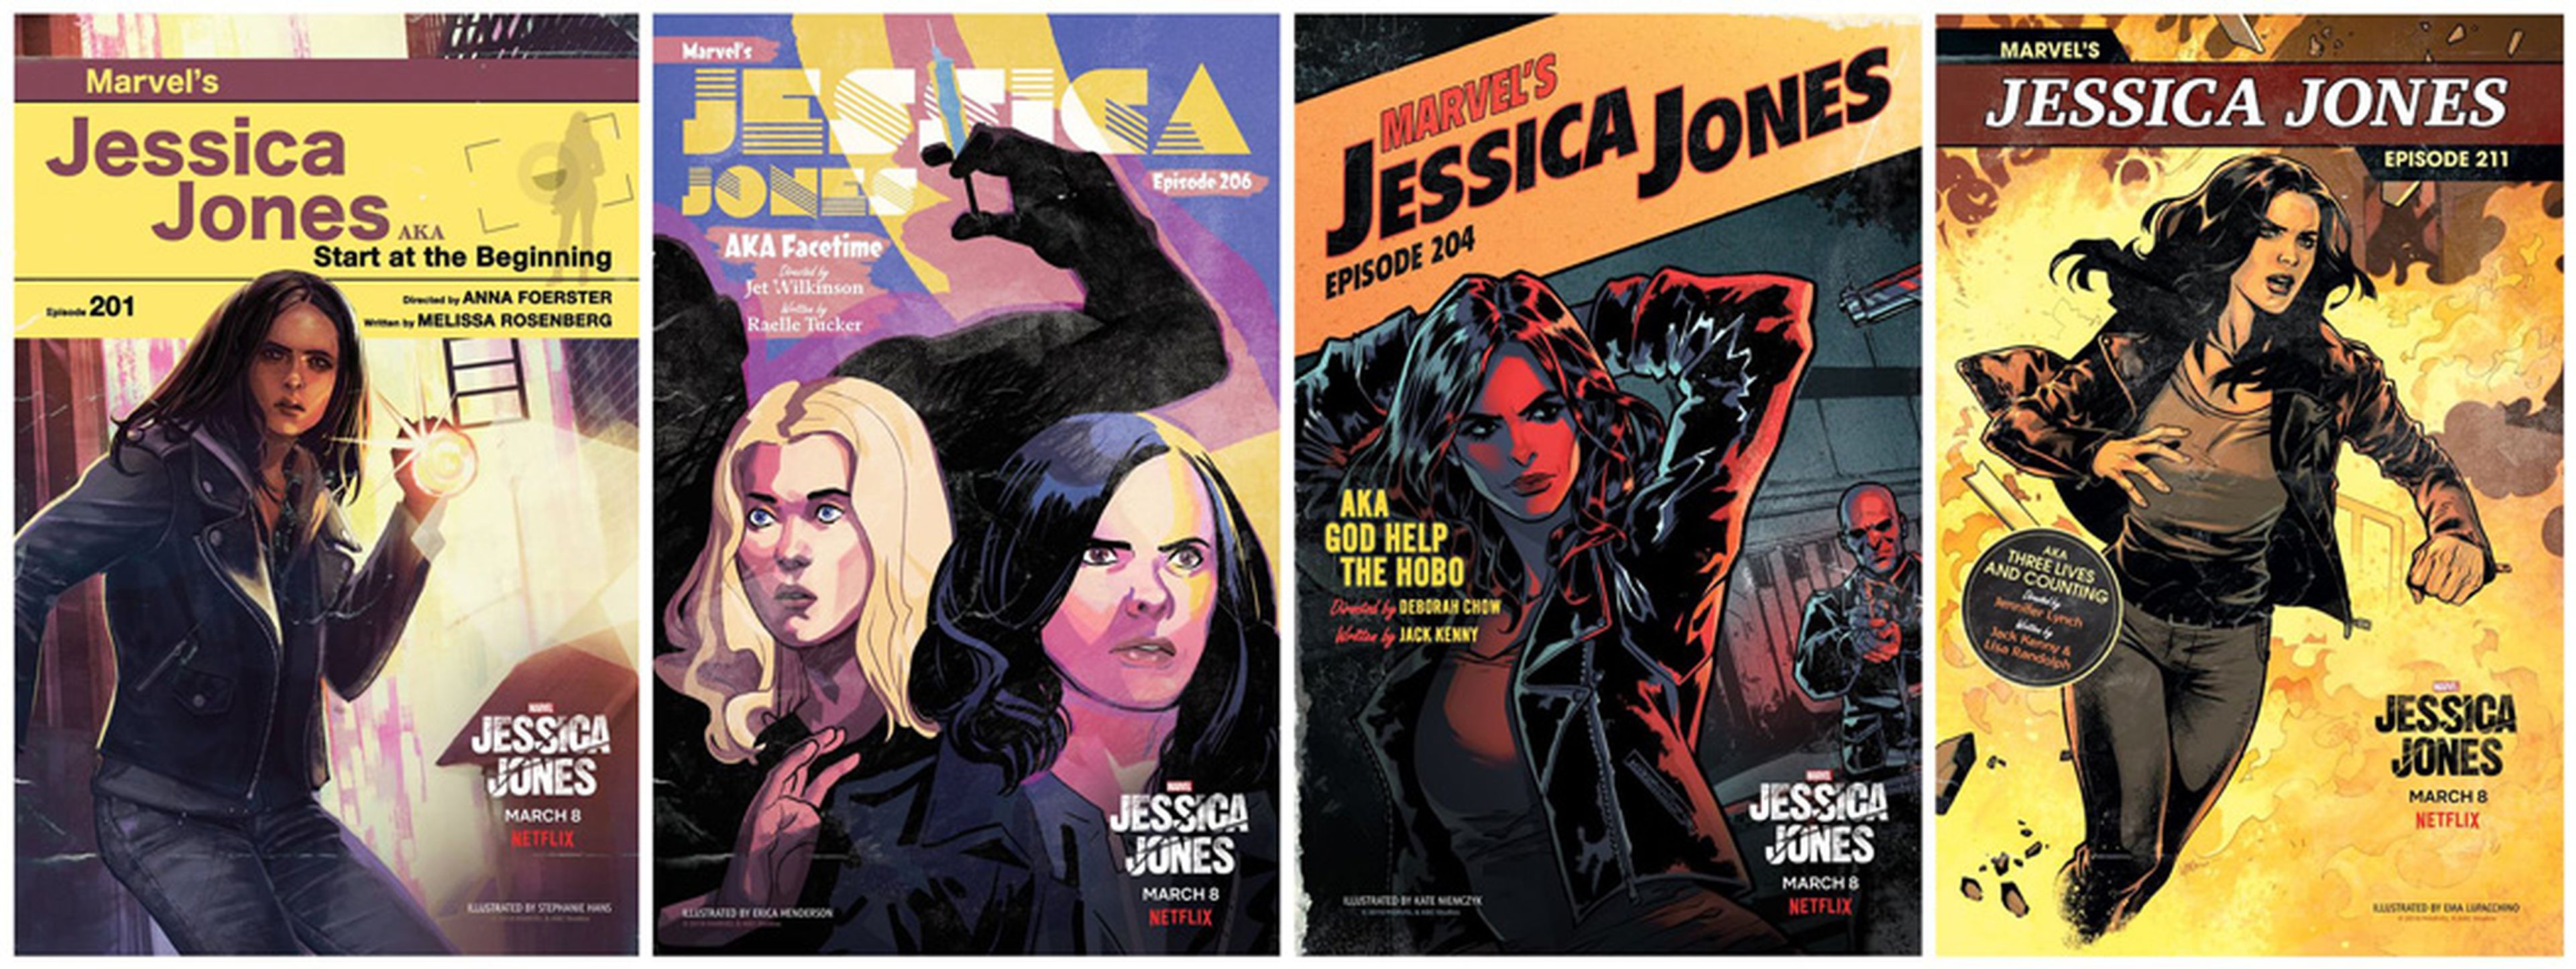 Jessica Jones - 13 portadas exclusivas de arte estilo cómic inspiradas en el espíritu y la esencia de cada episodio de esta nueva entrega